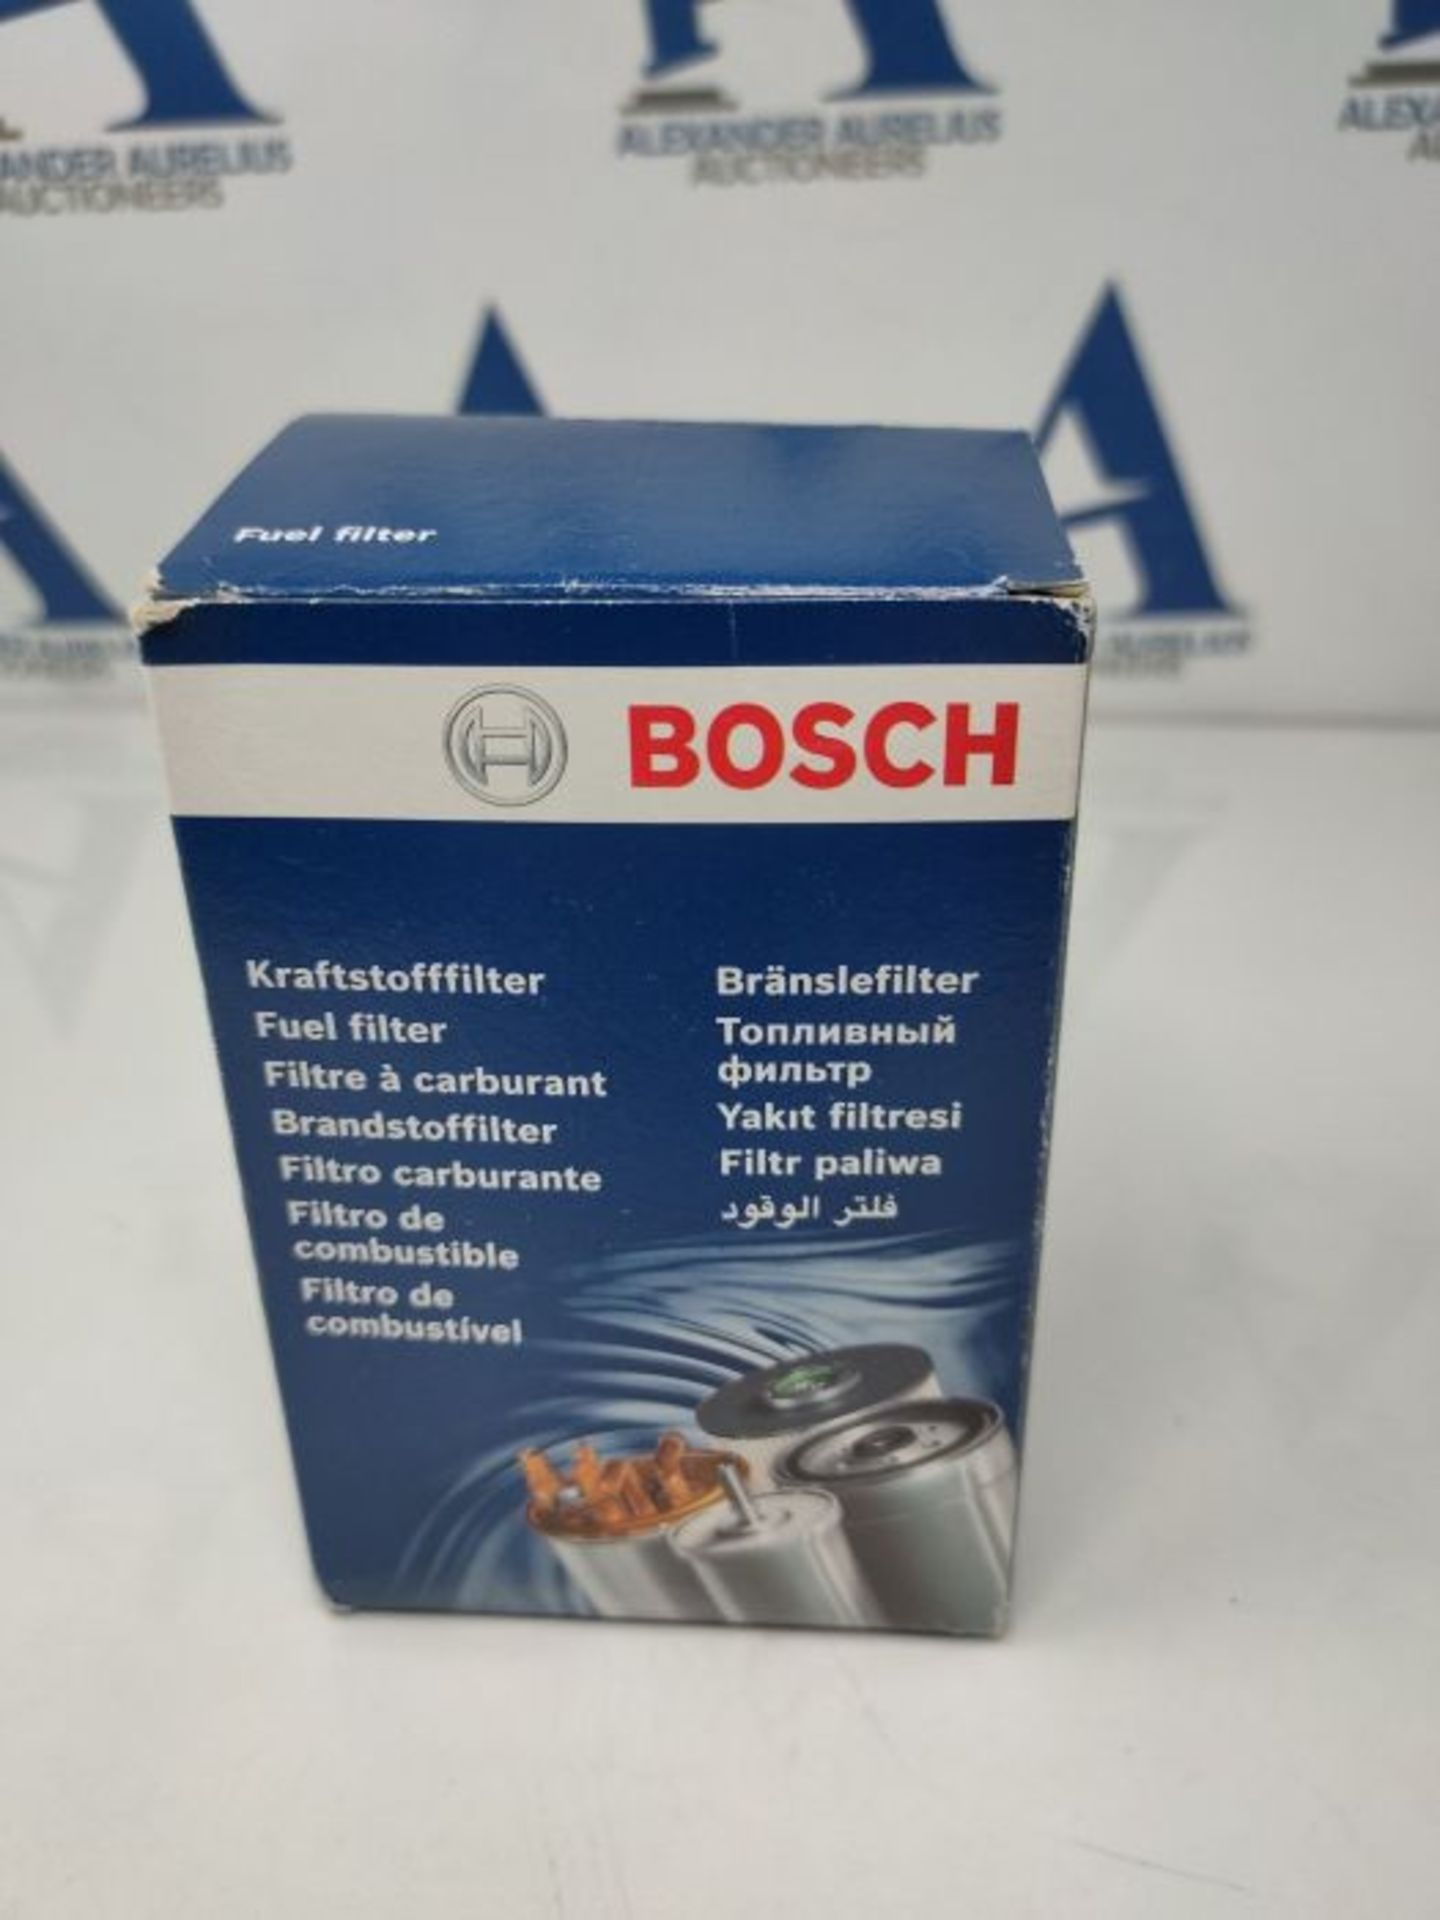 Bosch N0013 - Diesel Filter Car - Image 5 of 6